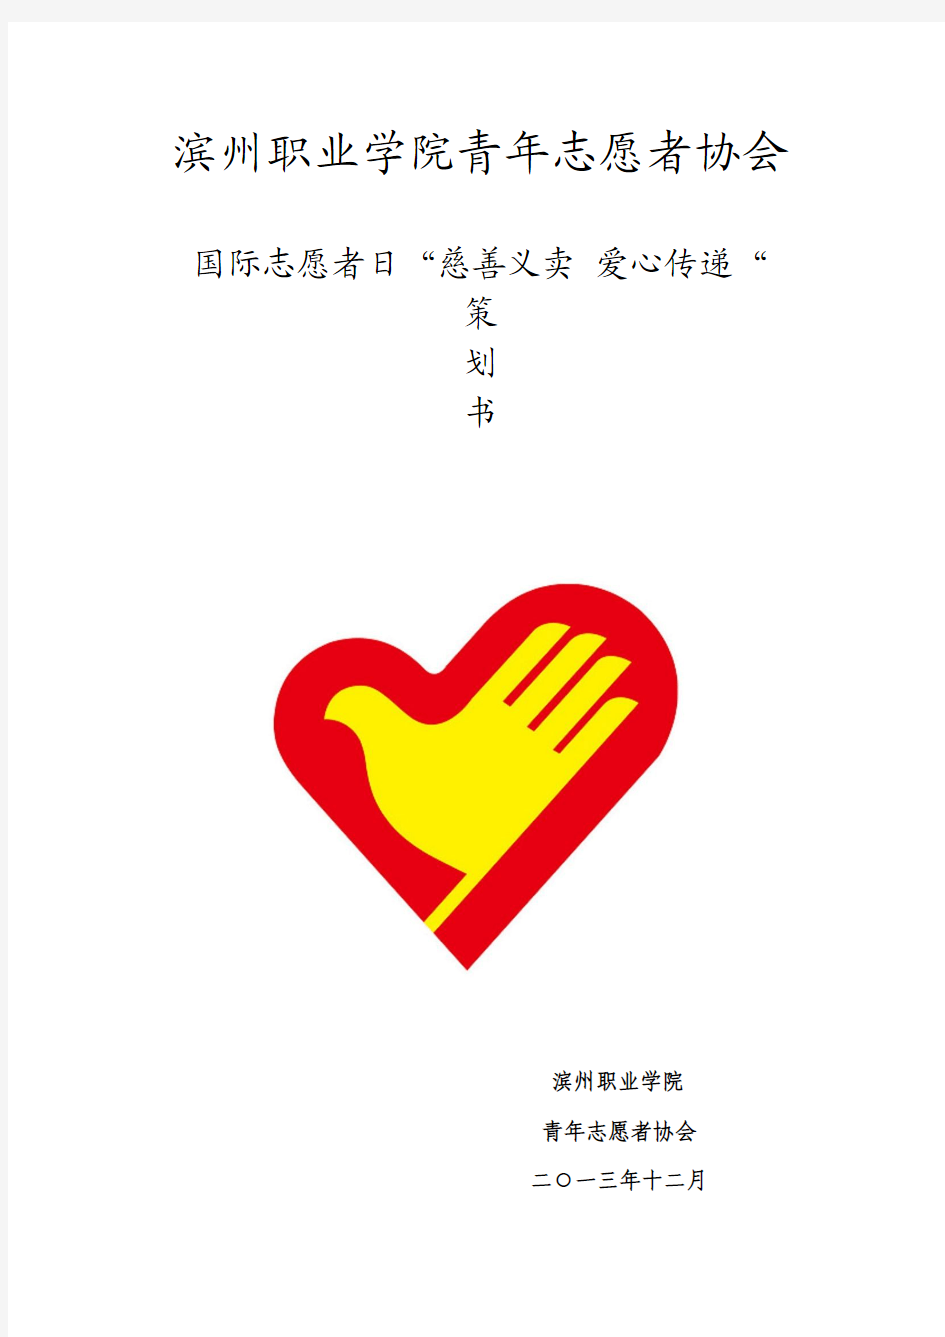 滨州职业学院青年志愿者协会 慈善义卖,爱心传递 策划书